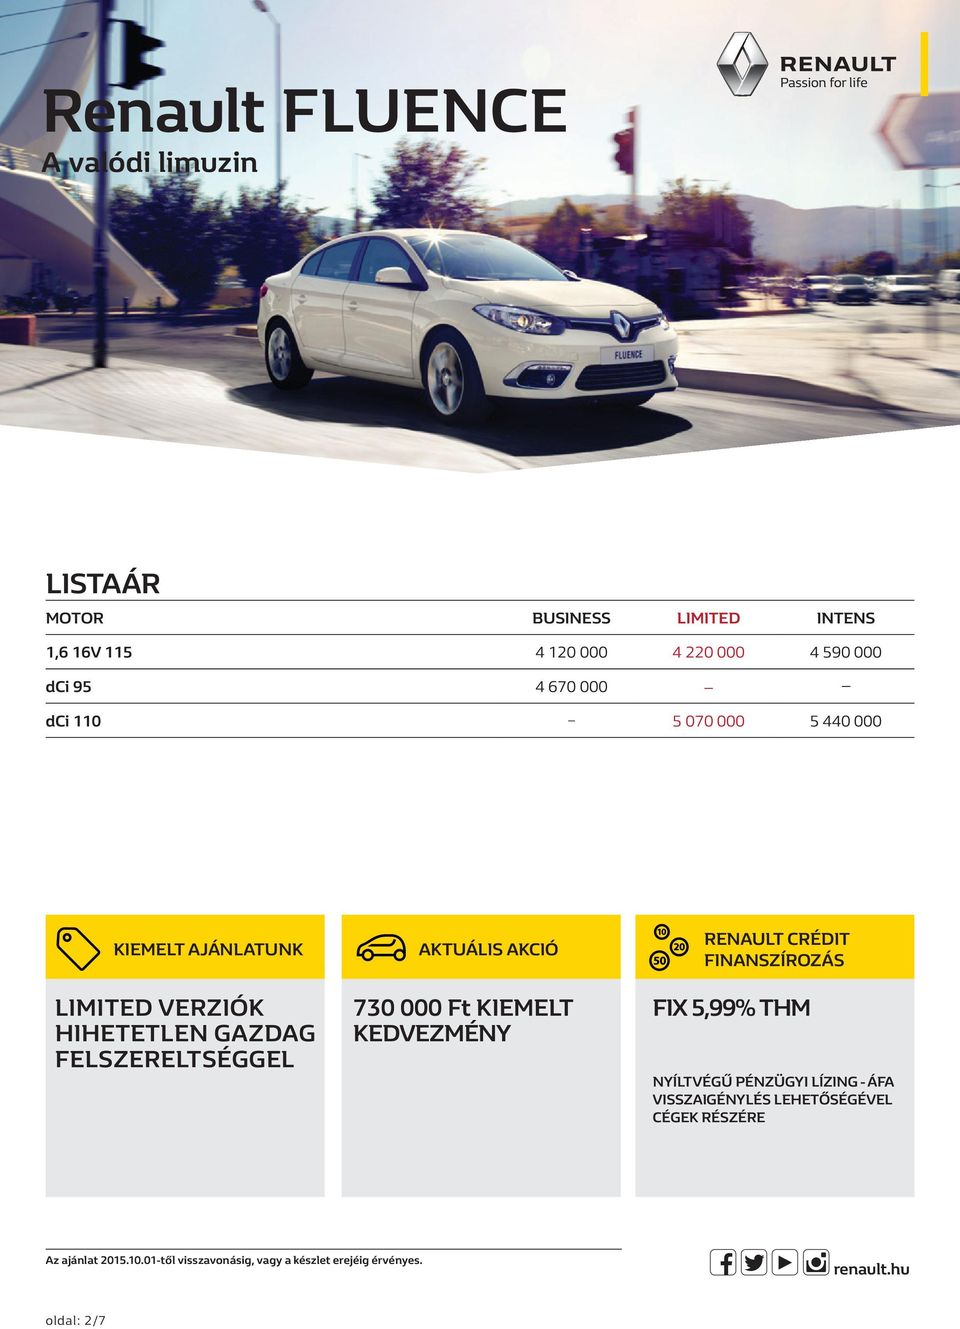 730 000 Ft KIEMELT KEDVEZMÉNY Renault Crédit finanszírozás Fix 5,99% THM NYÍLTVÉGŰ PÉNZÜGYI LÍZING - ÁFA VISSZAIGÉNYLÉS